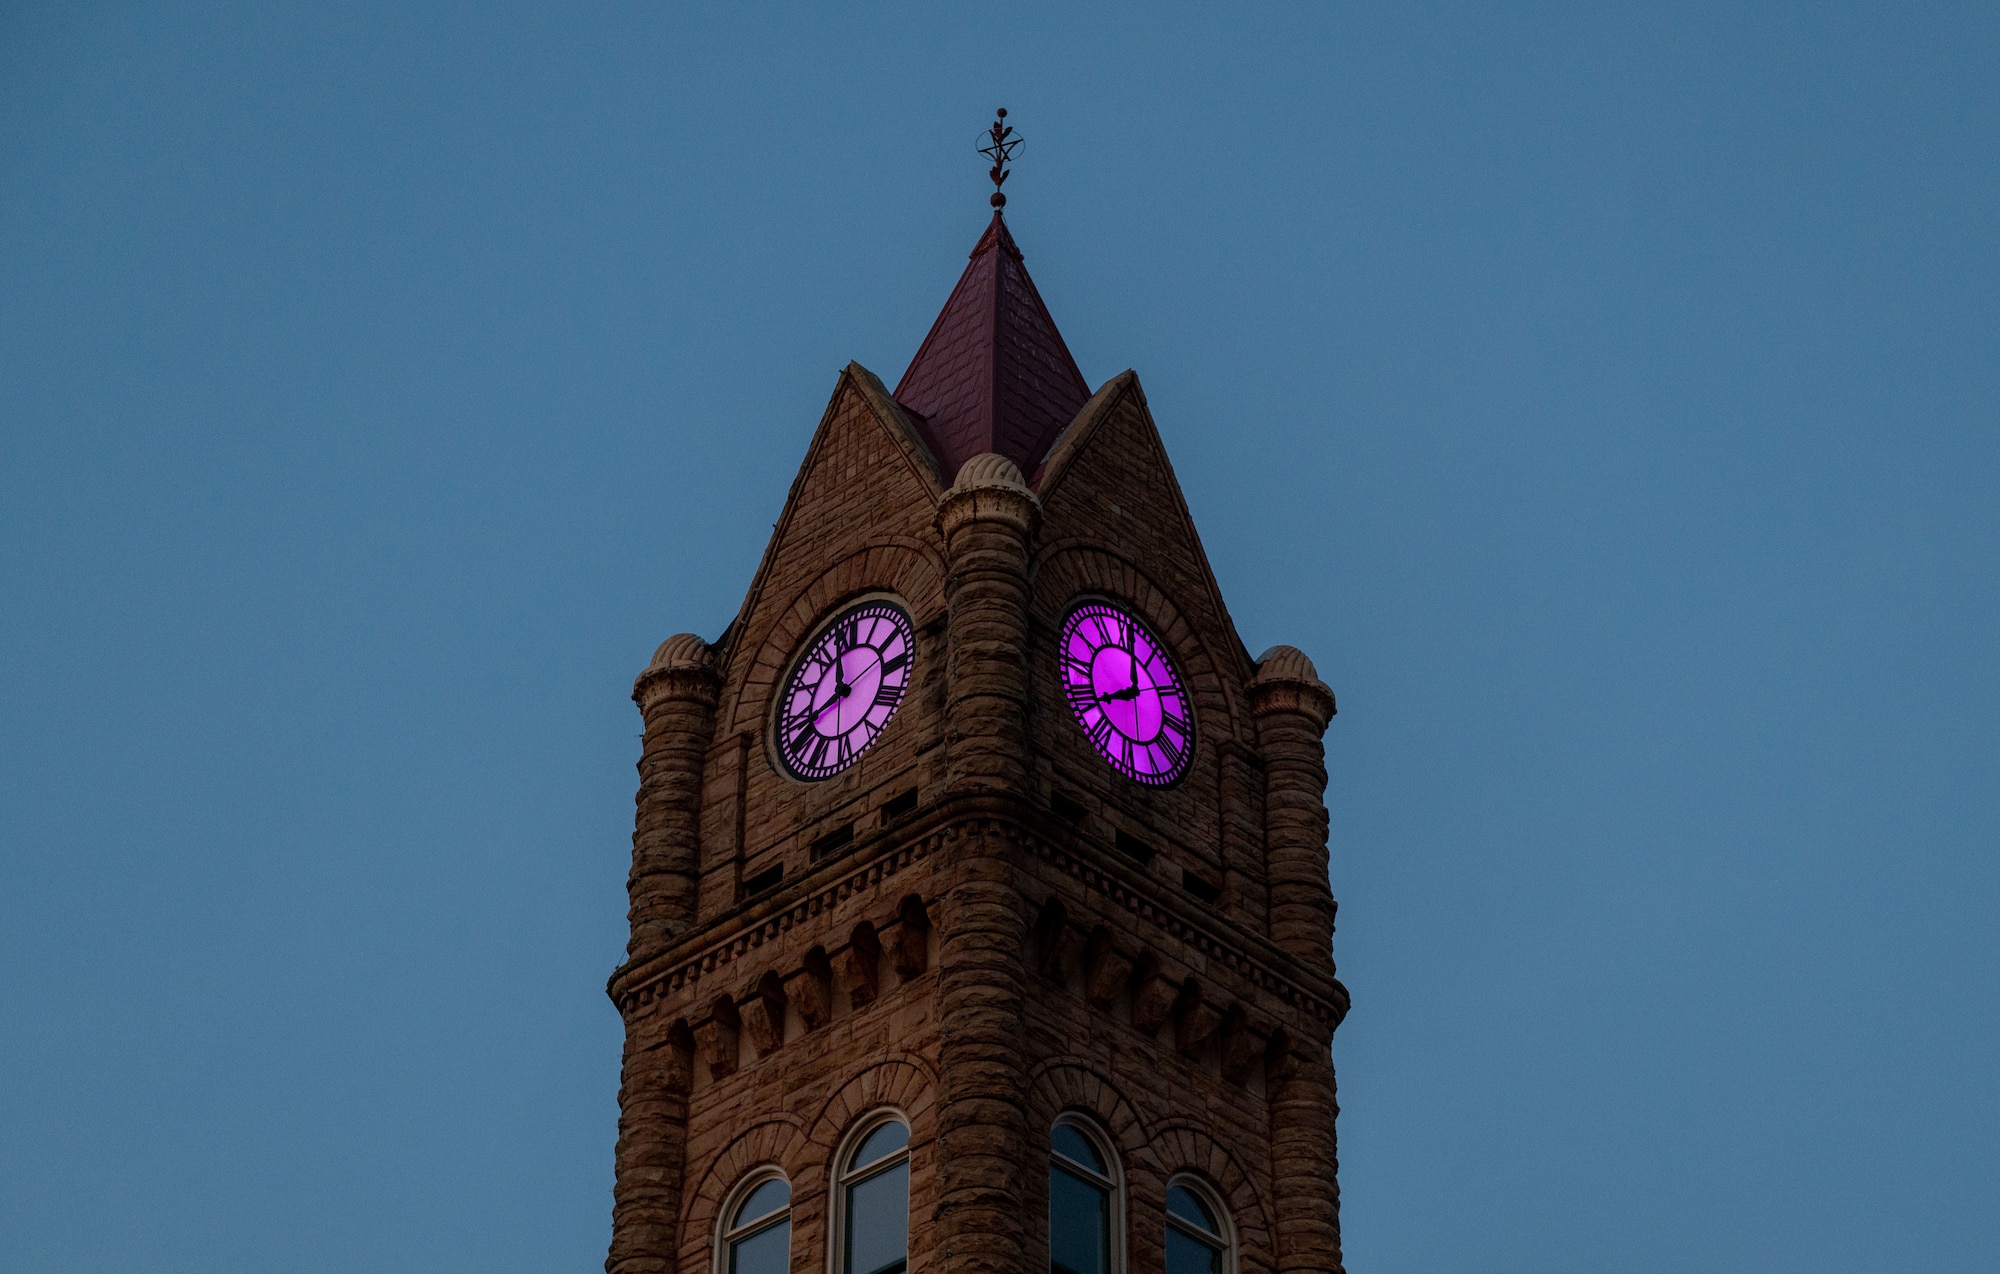 Image of Sumter Opera House clocktower